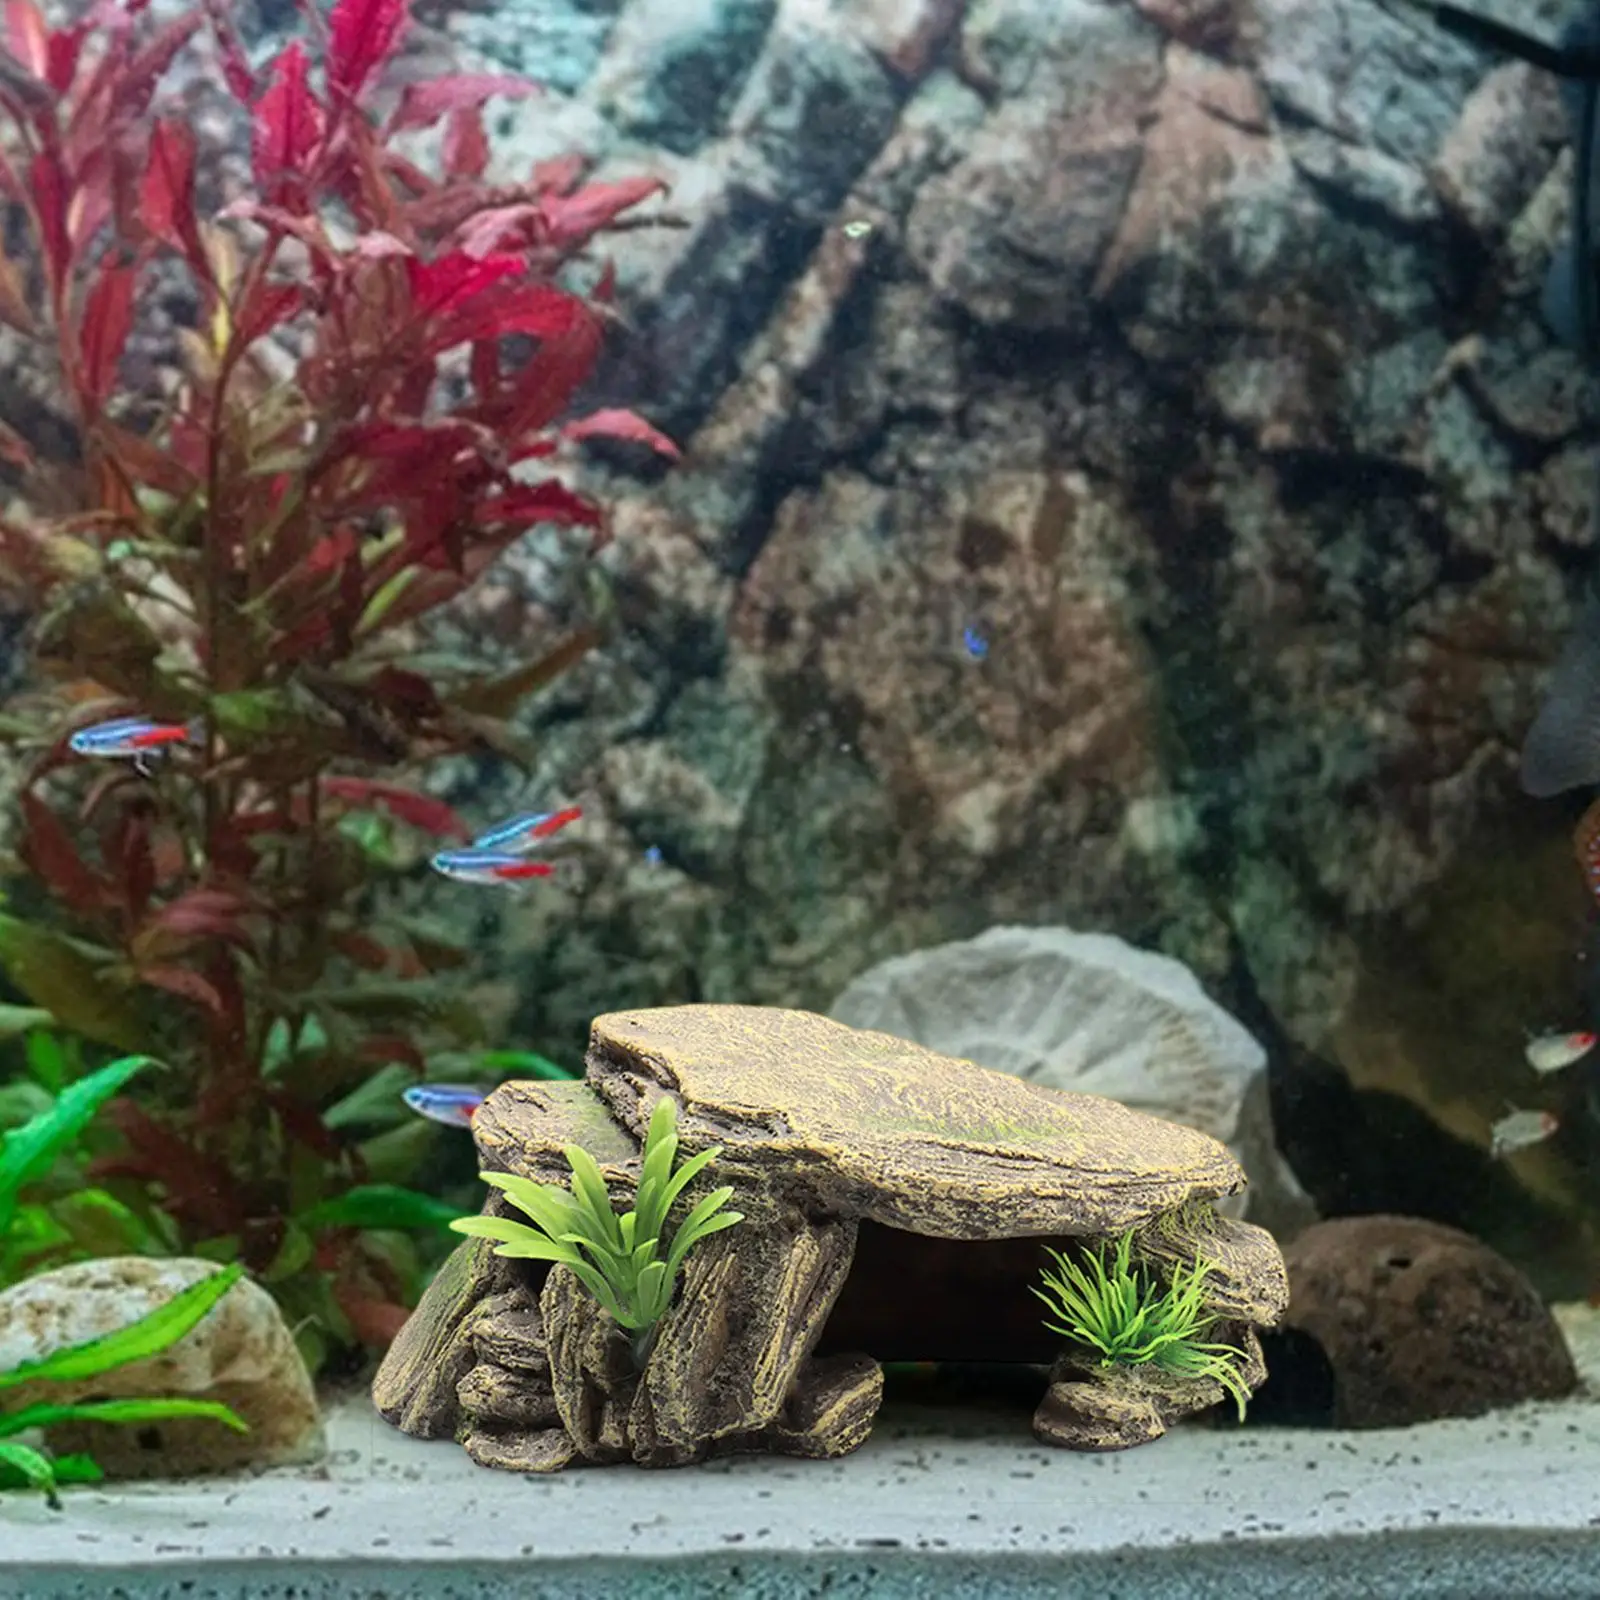 Aquarium Turtle Tank Decoration Terrace Reptile Hideout Cave Decor Landscaping Decoration Tortoise Climbing Platform for Frogs